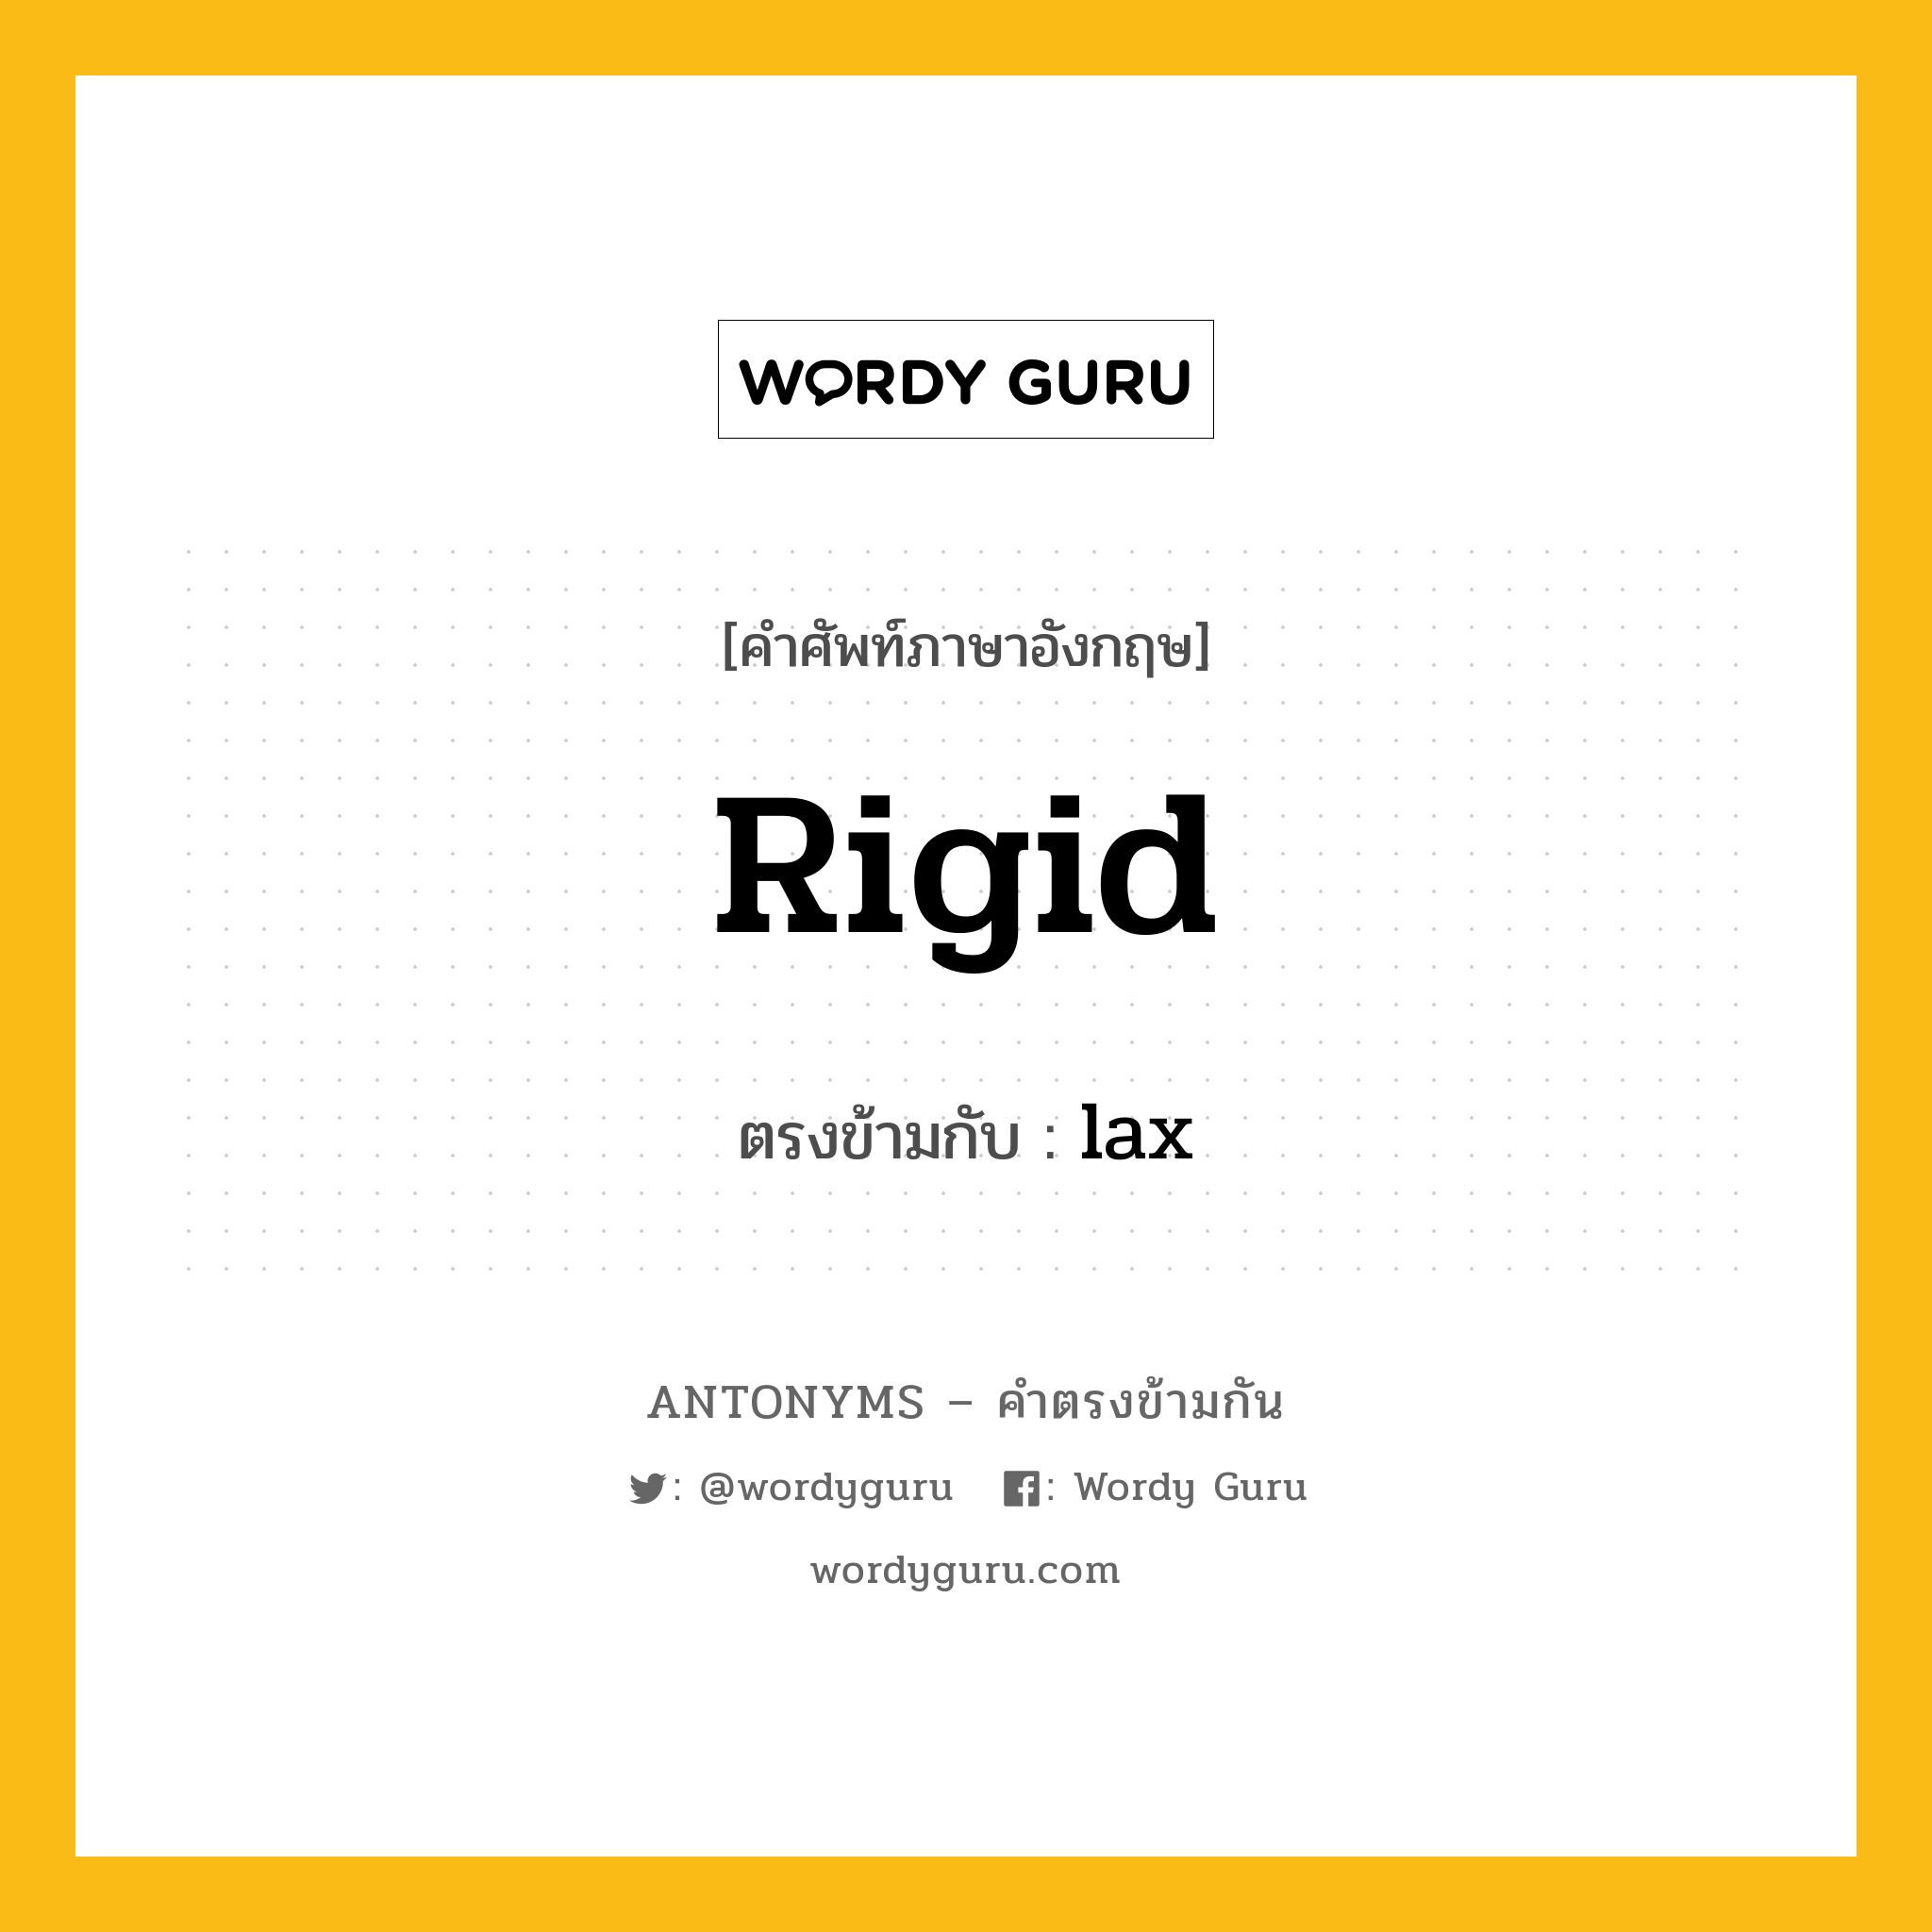 rigid เป็นคำตรงข้ามกับคำไหนบ้าง?, คำศัพท์ภาษาอังกฤษ rigid ตรงข้ามกับ lax หมวด lax